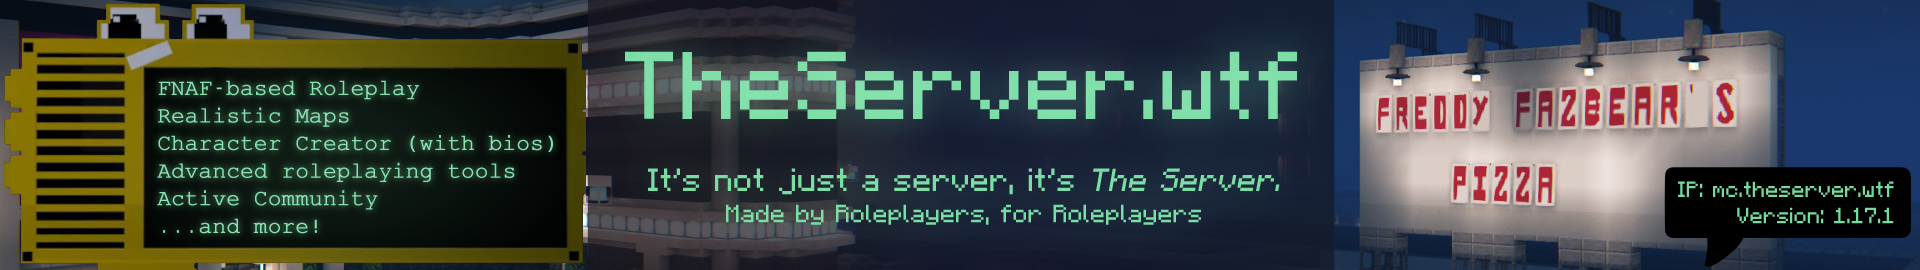 TheServer.wtf - A FNaF Roleplay Server [READ DESC.] Minecraft Server